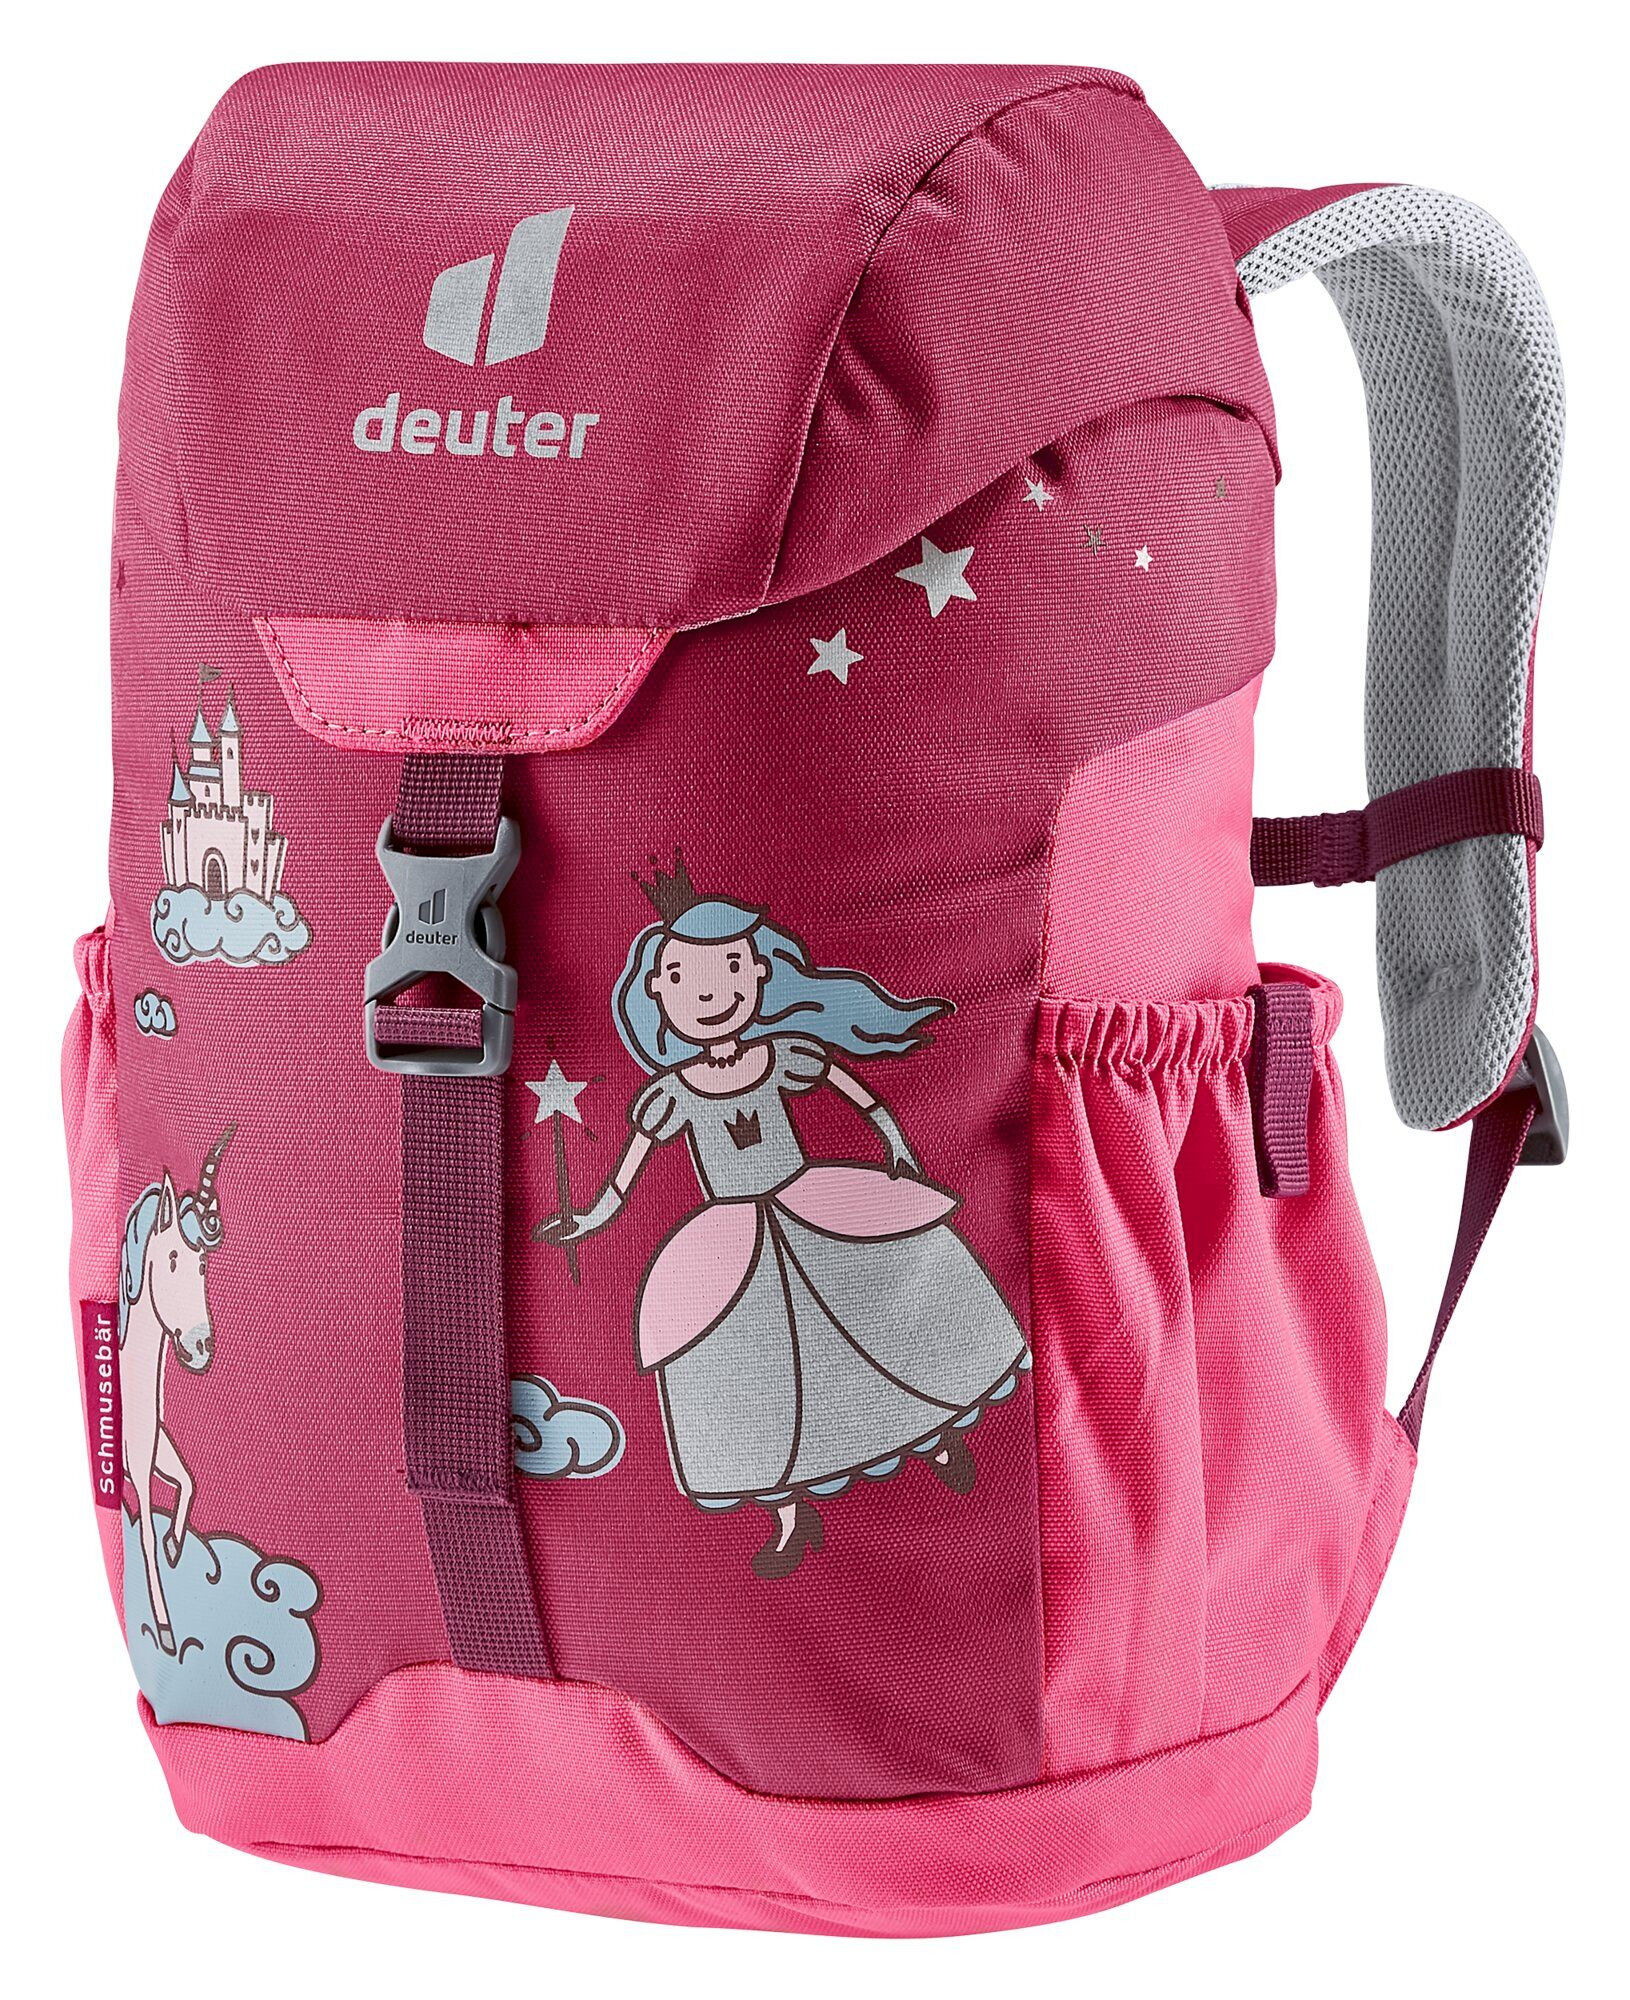 Deuter Schmusebär - Walking backpack - Kids